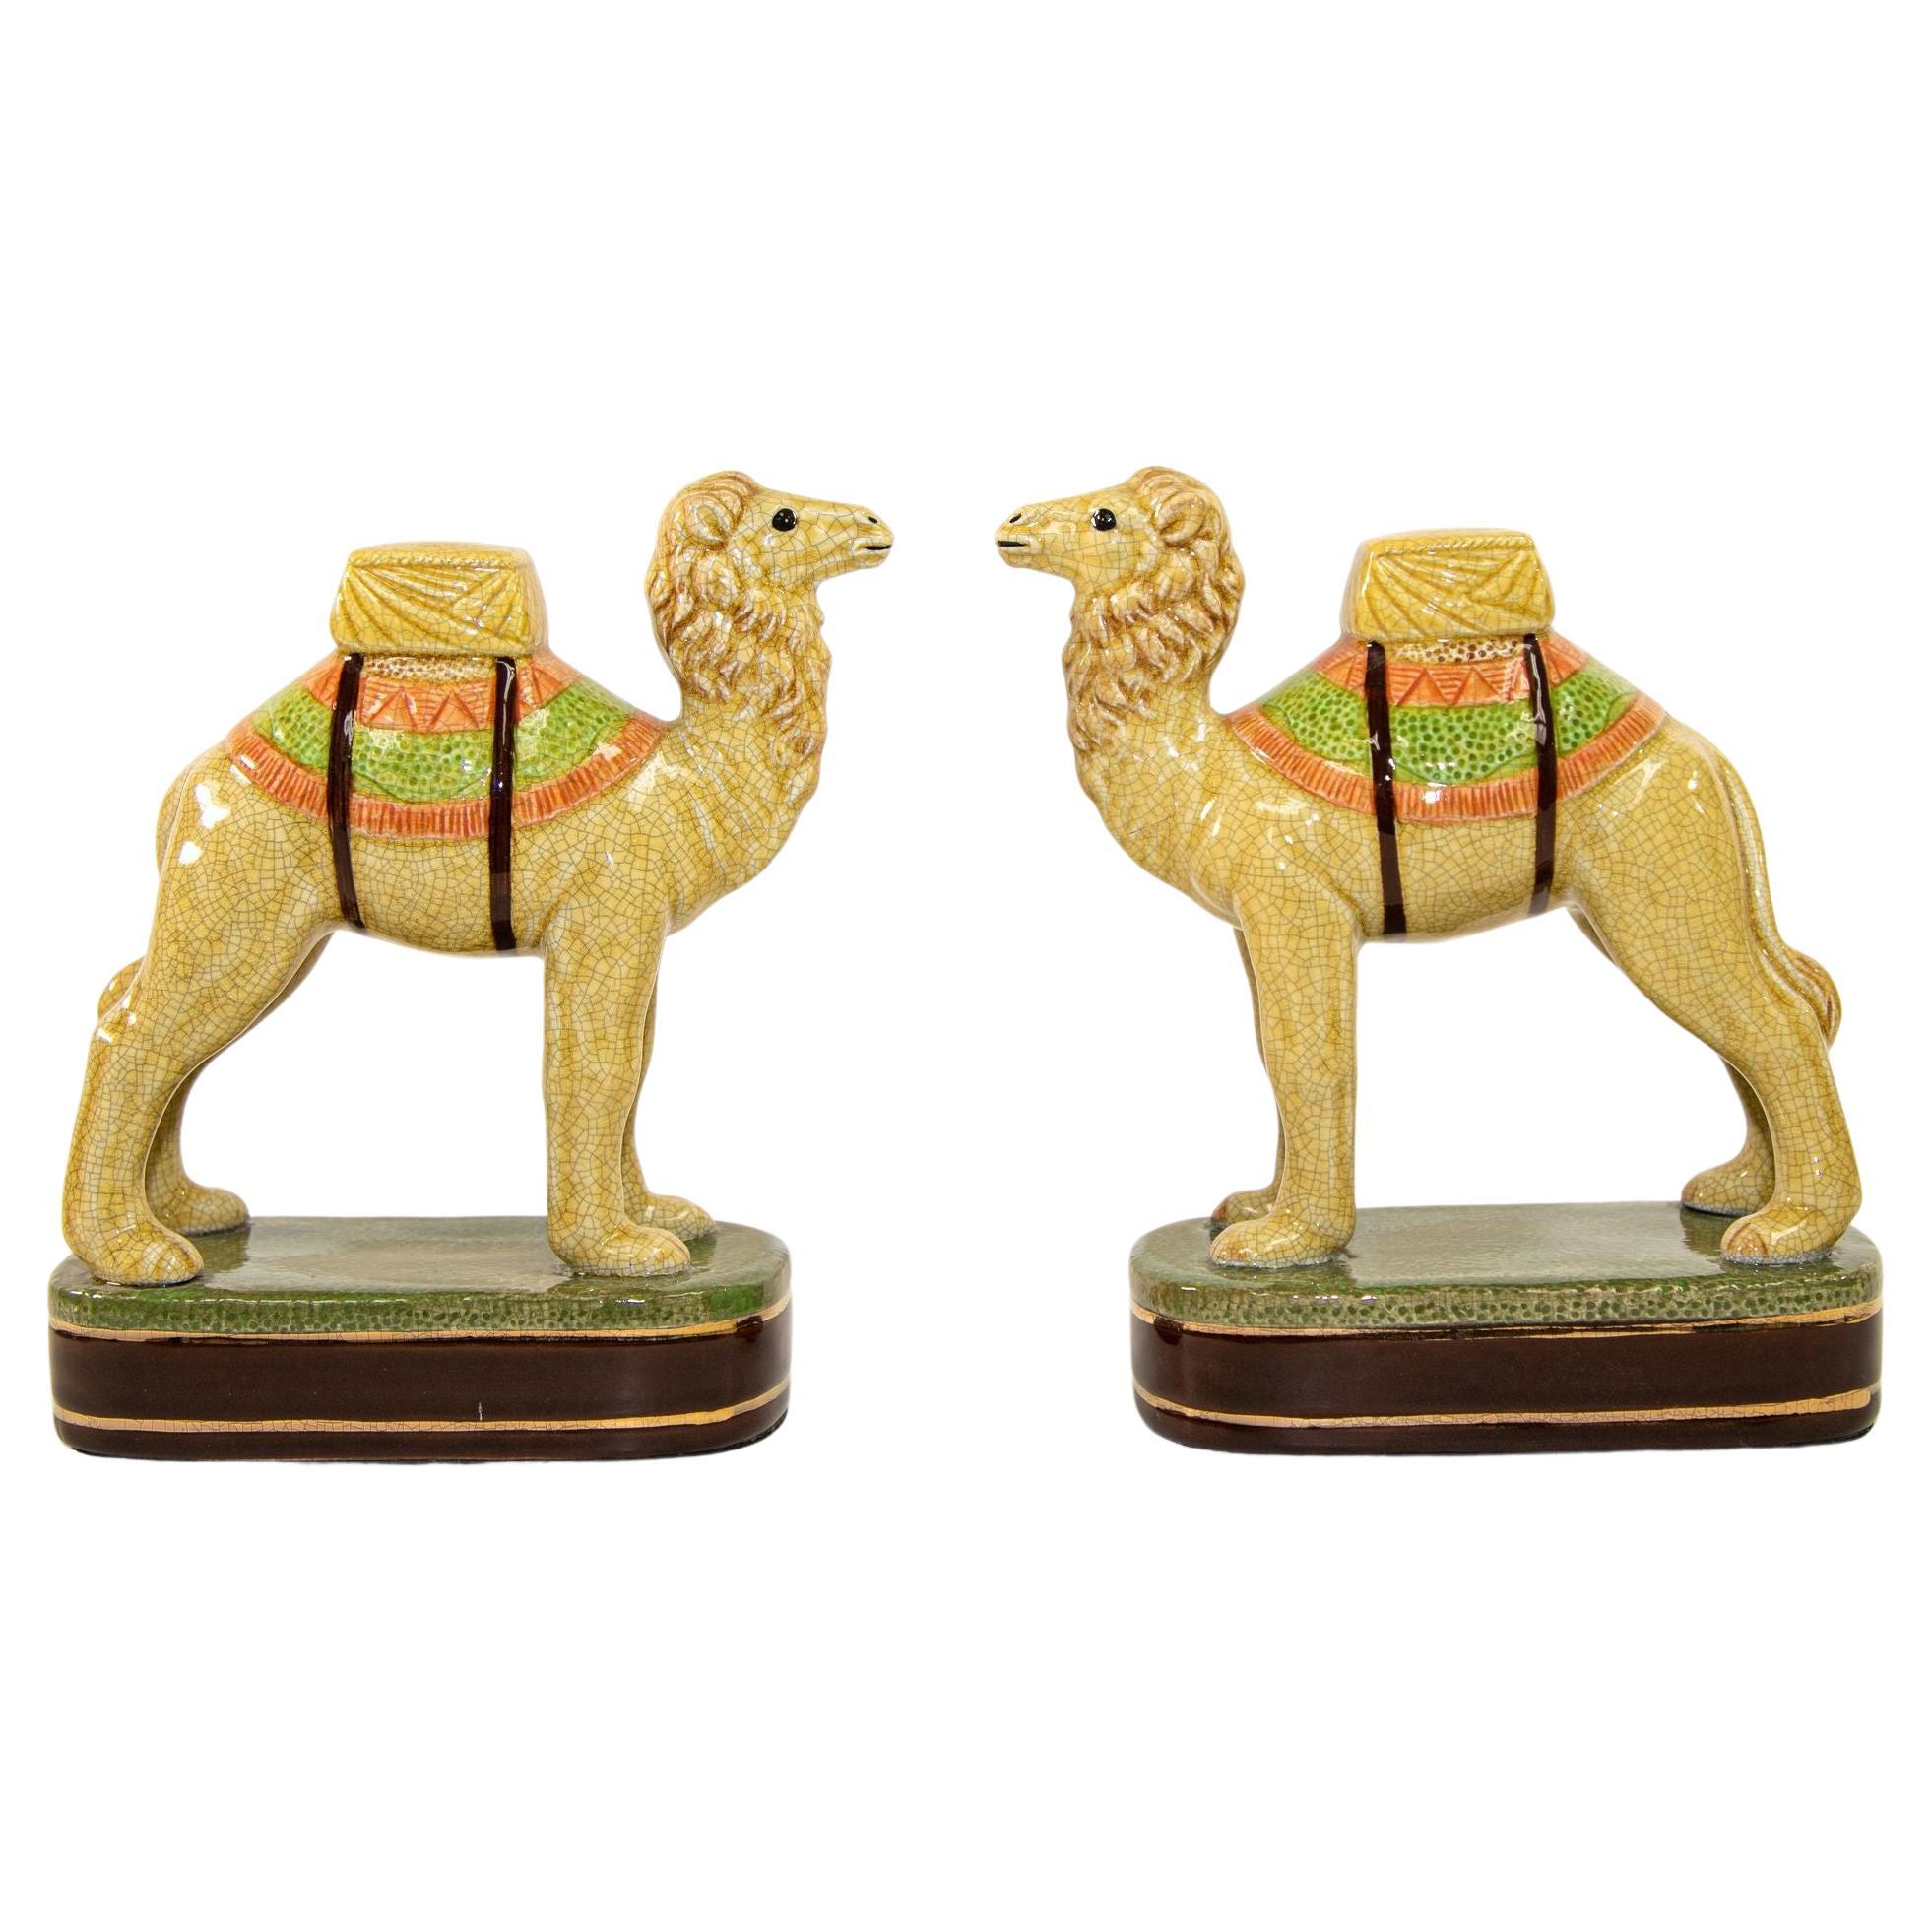 Vintage Porcelain Camel Sculptures Figurines Bookends For Sale